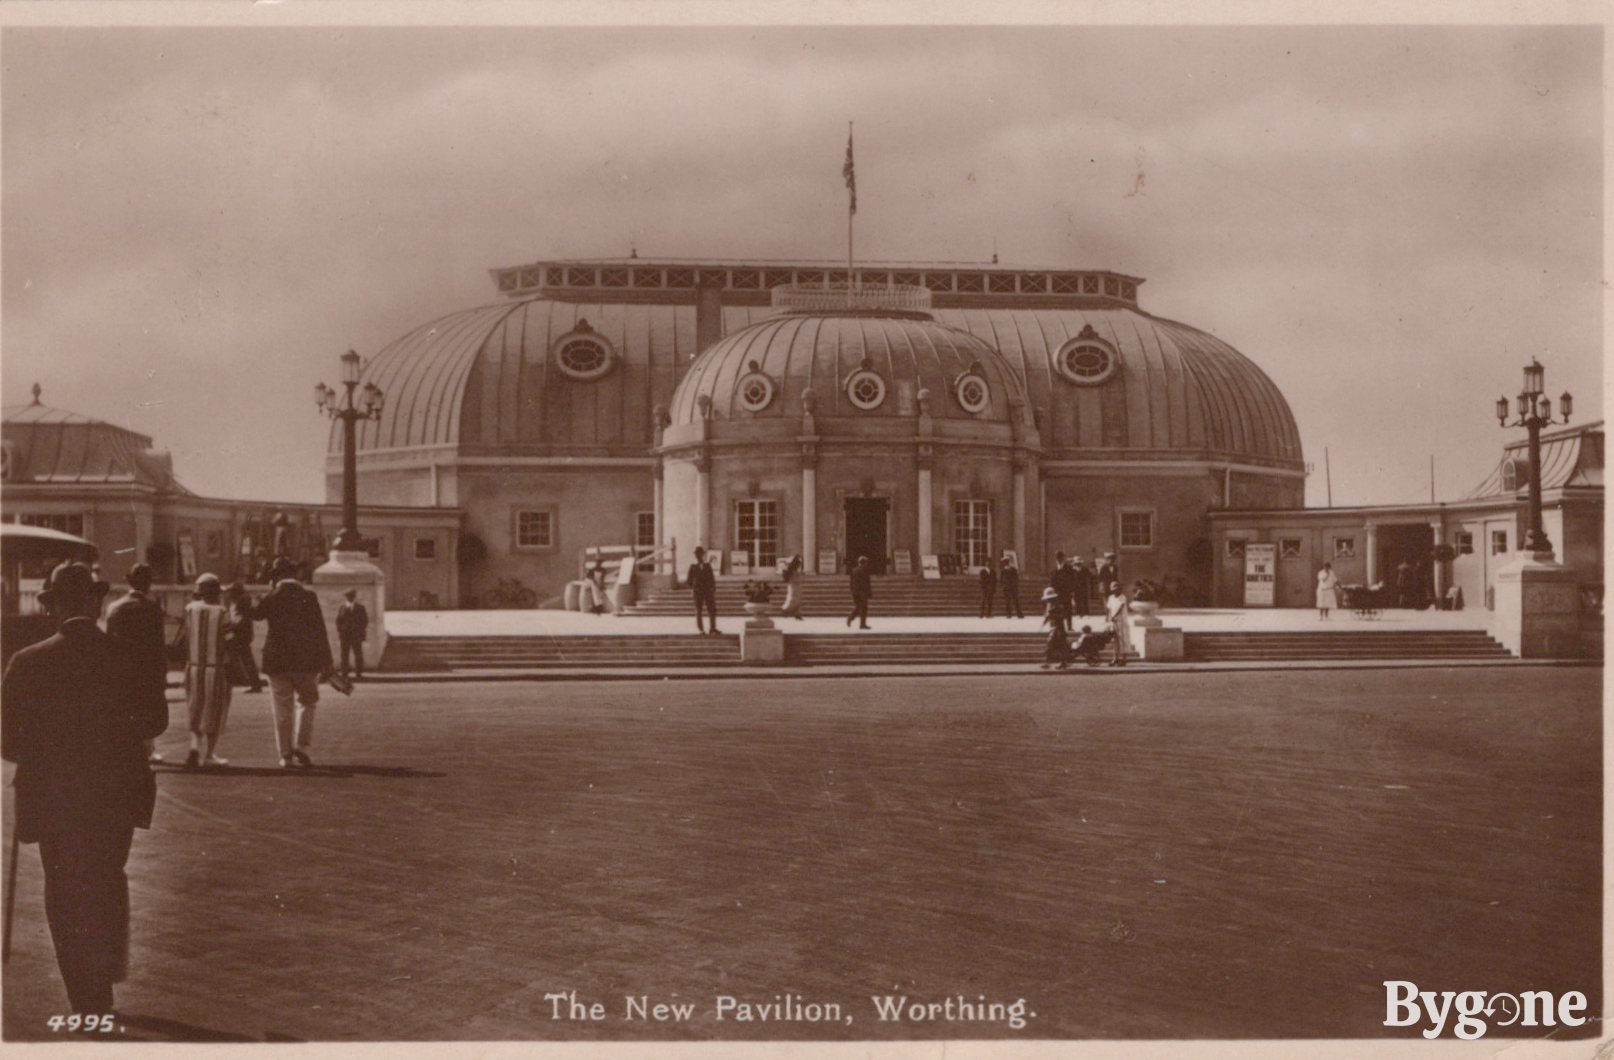 The New Pavilion, Worthing